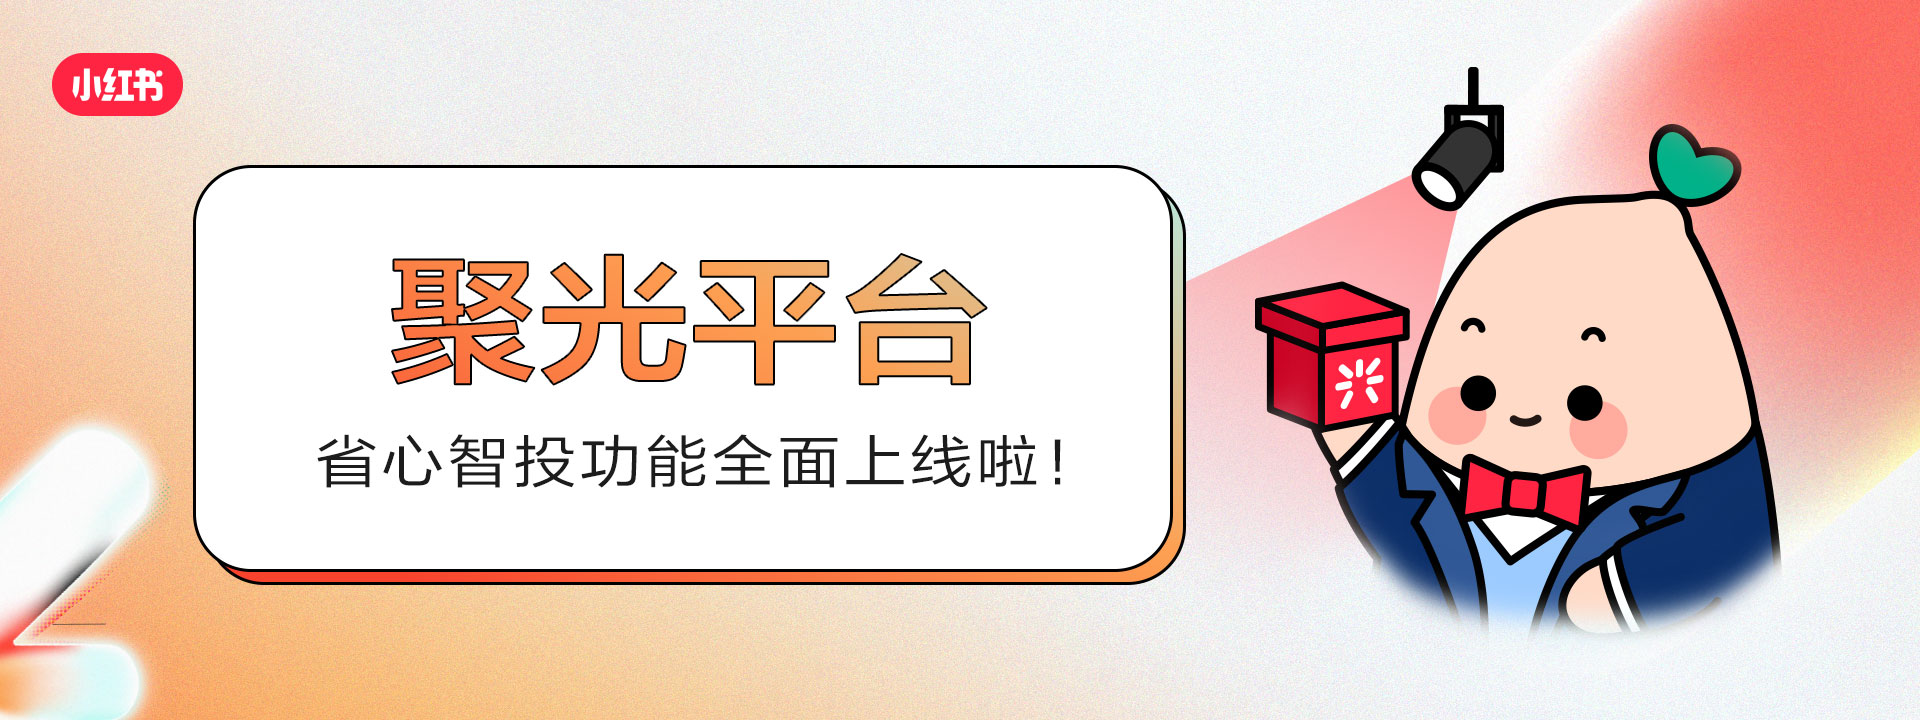 小红书聚光平台全新上线「省心智投」功能